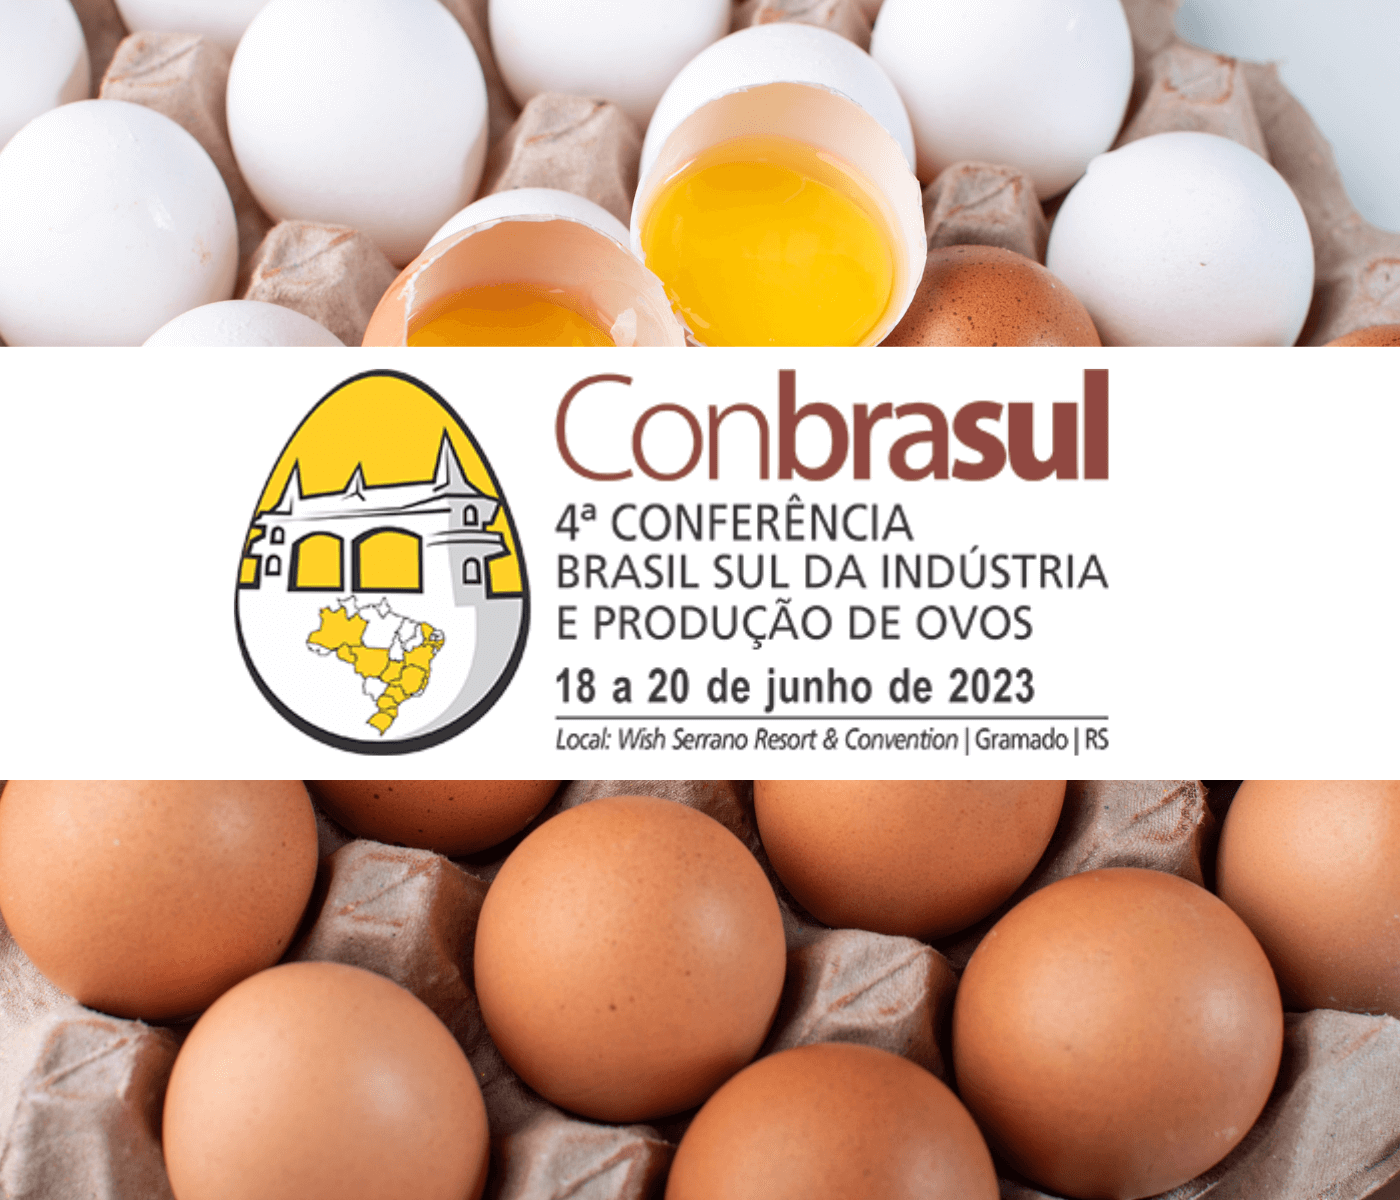 4ª Conbrasul divulga medidas de biosseguridade para o evento, de 18 a 20 de junho, em Gramado, RS